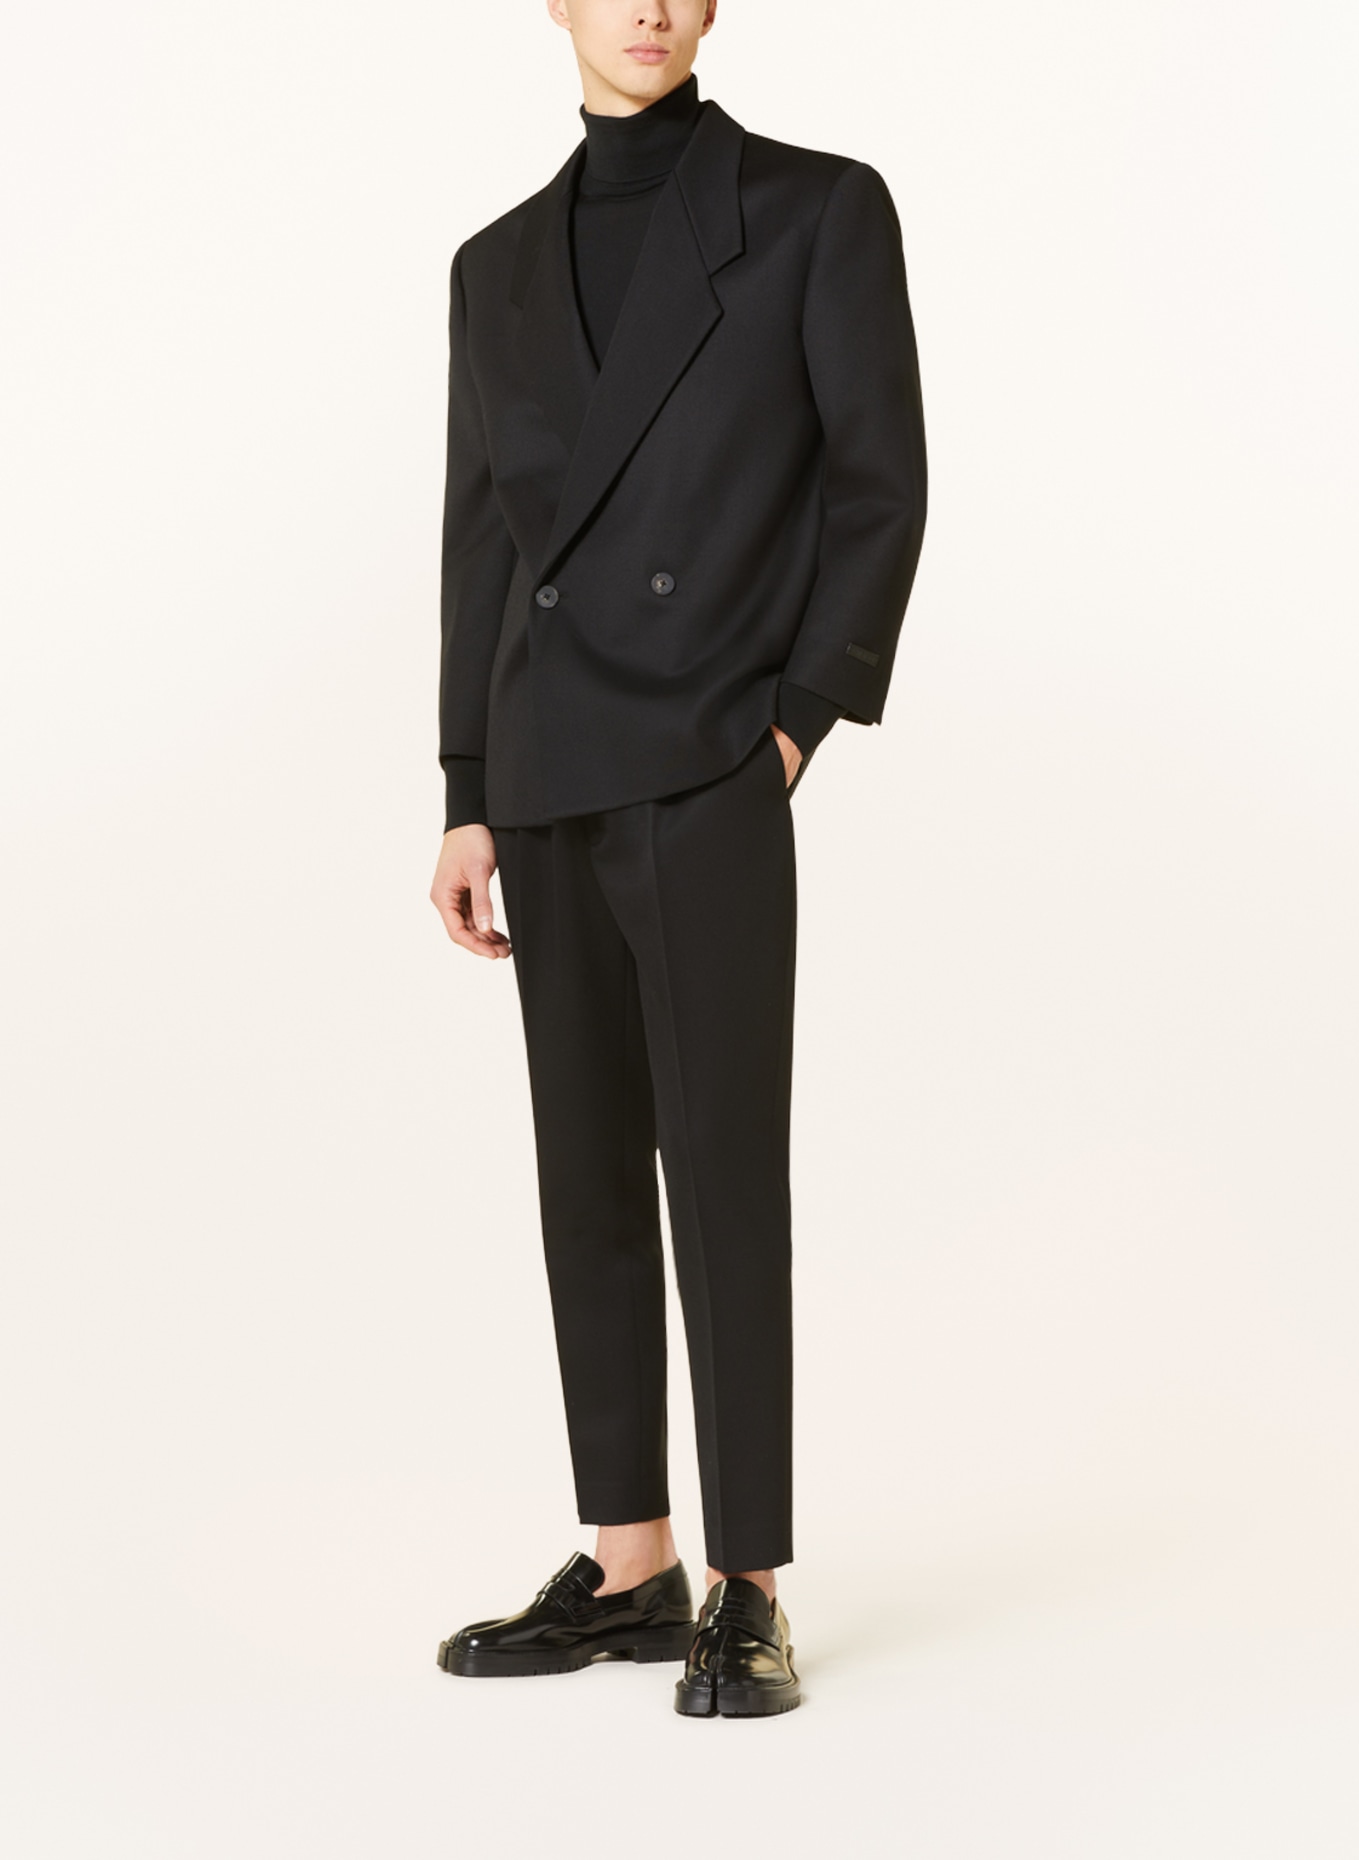 FEAR OF GOD Suit jacket regular fit, Color: BLACK (Image 2)